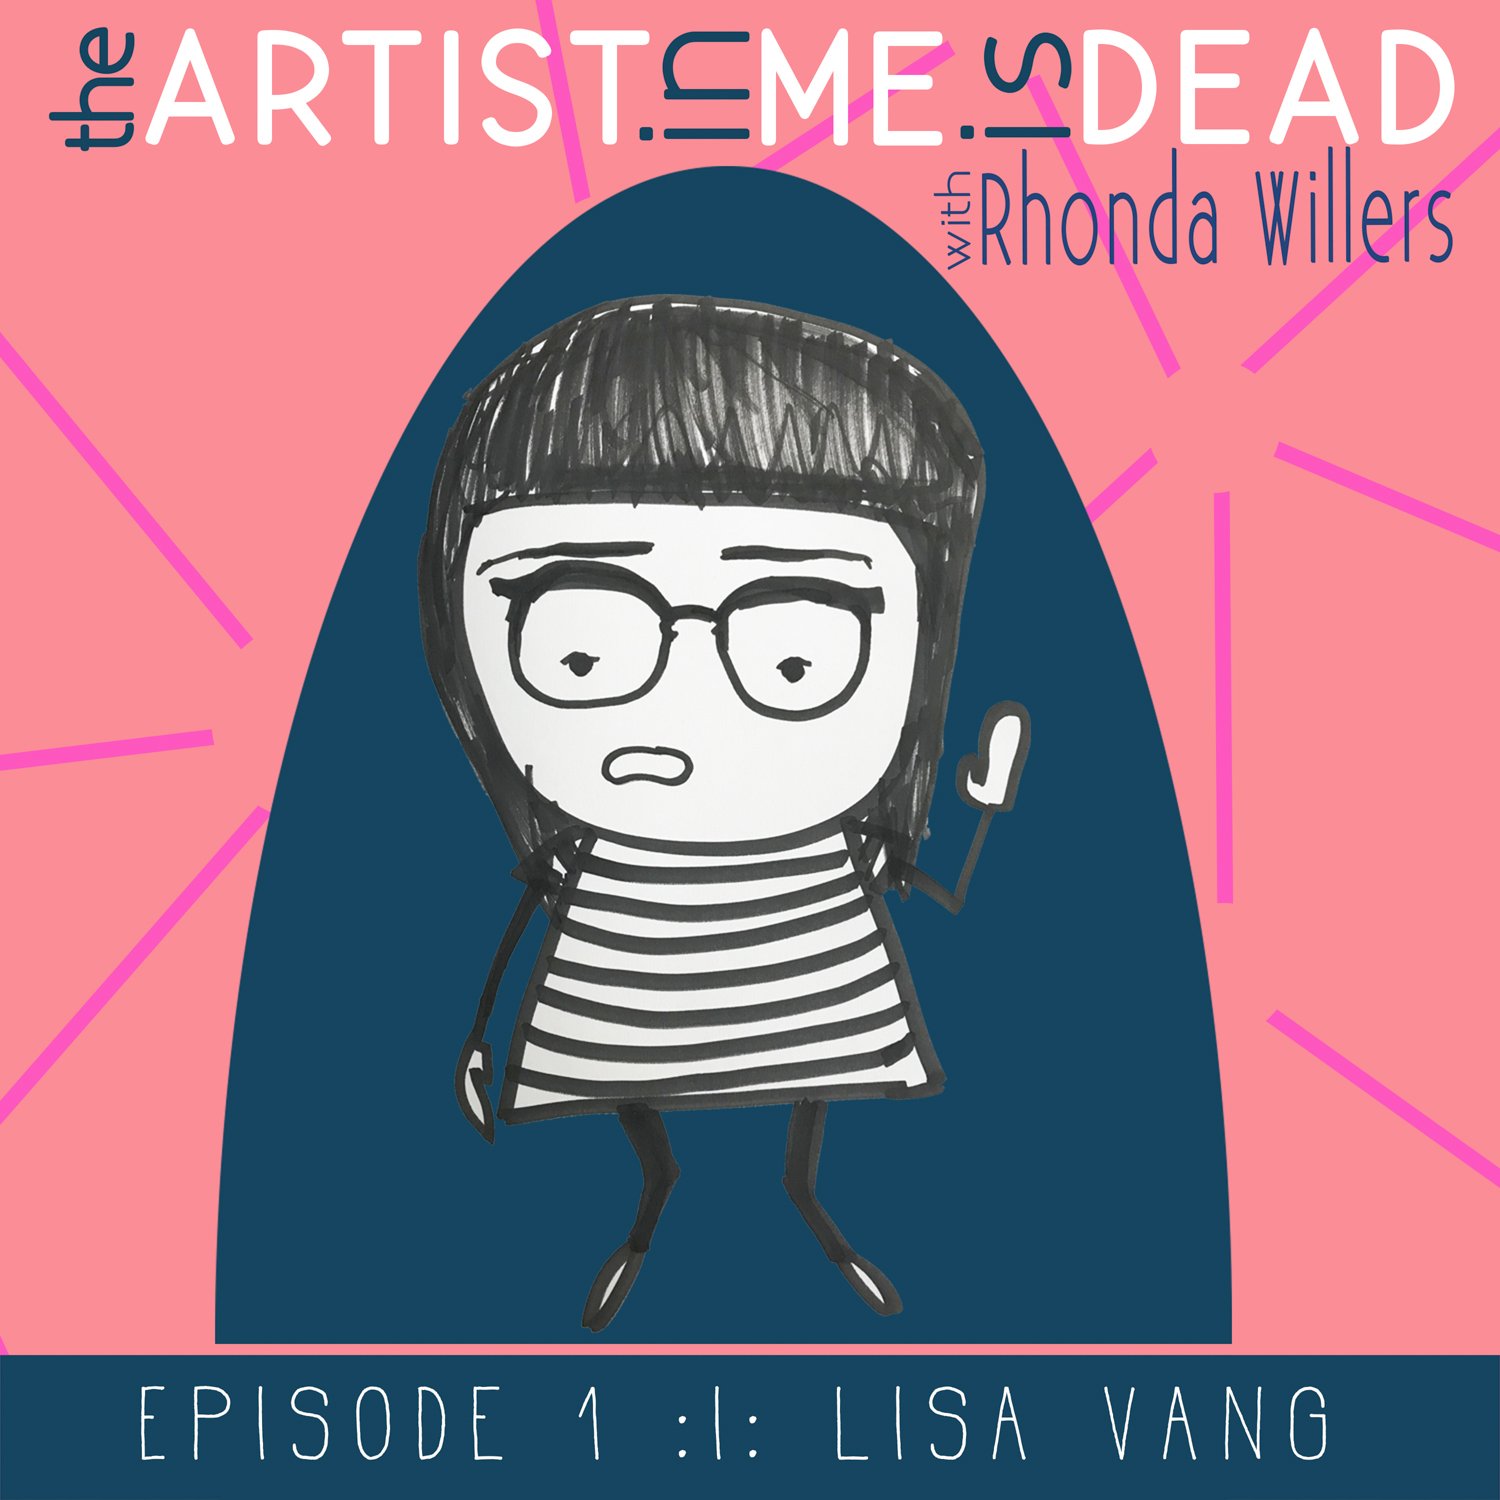 The-Artist-In-Me-Is-Dead_season1_episode_1_Lisa-Vang.jpeg